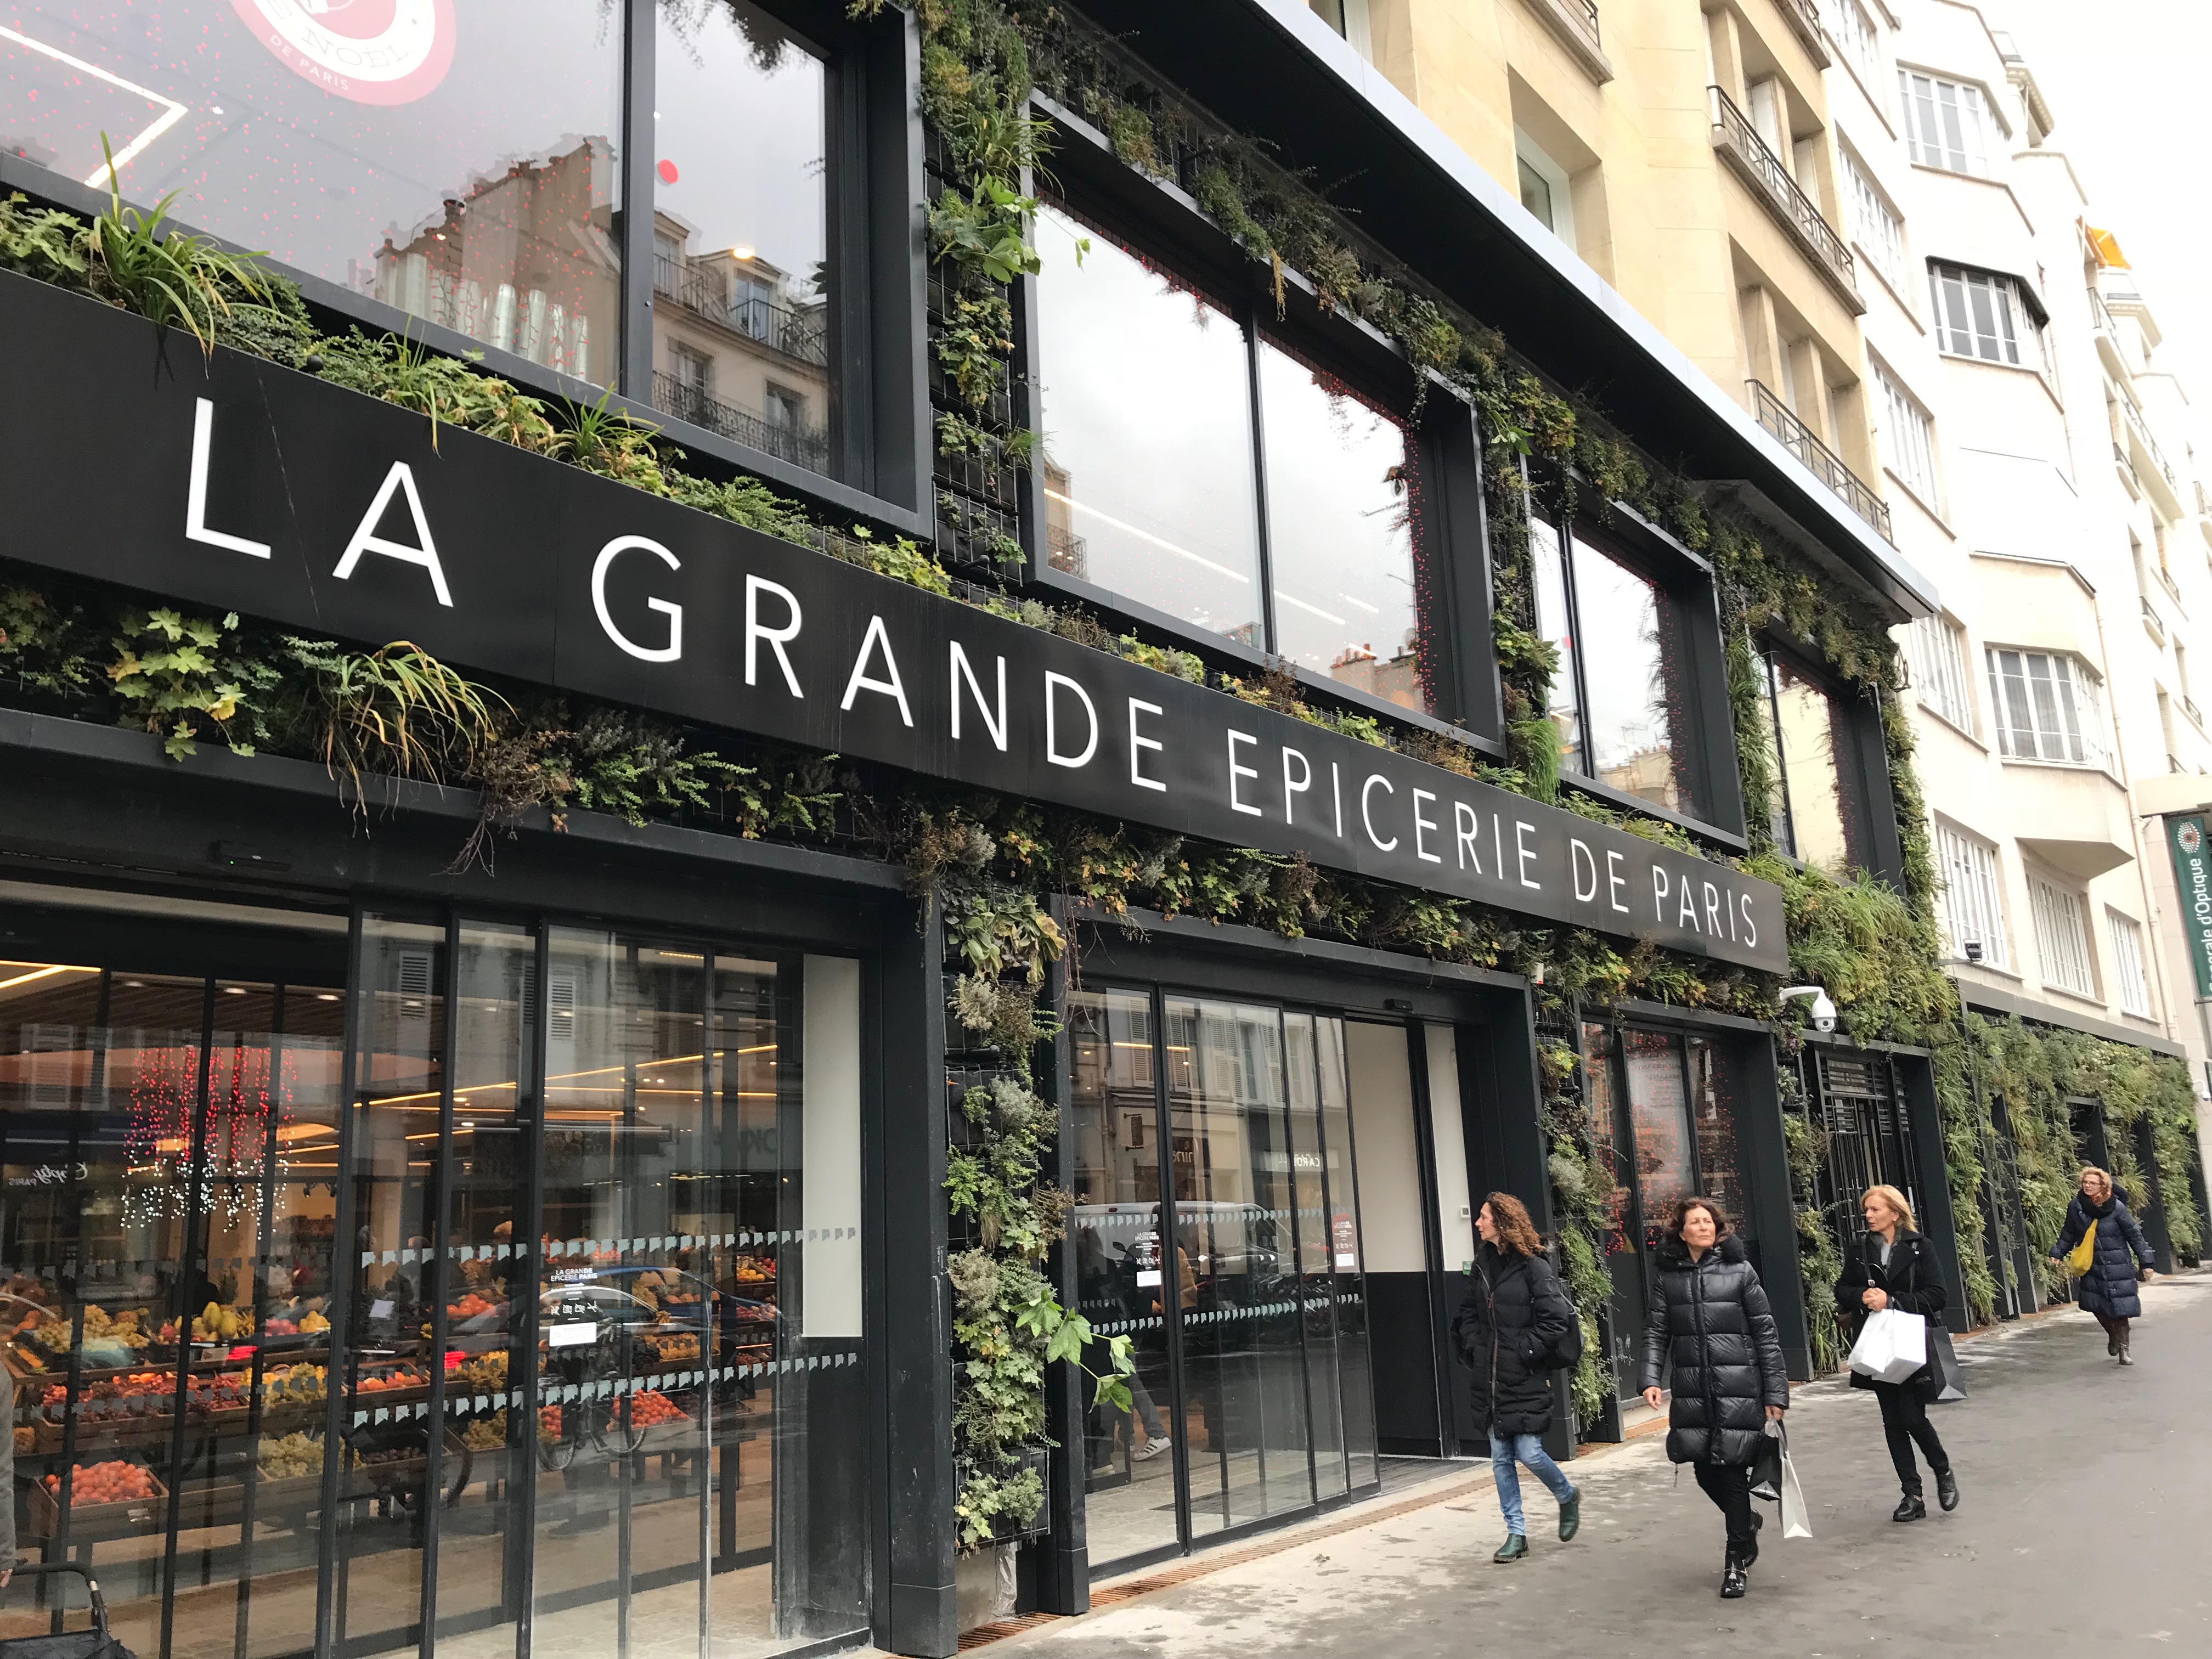 La Grande Épicerie de Paris